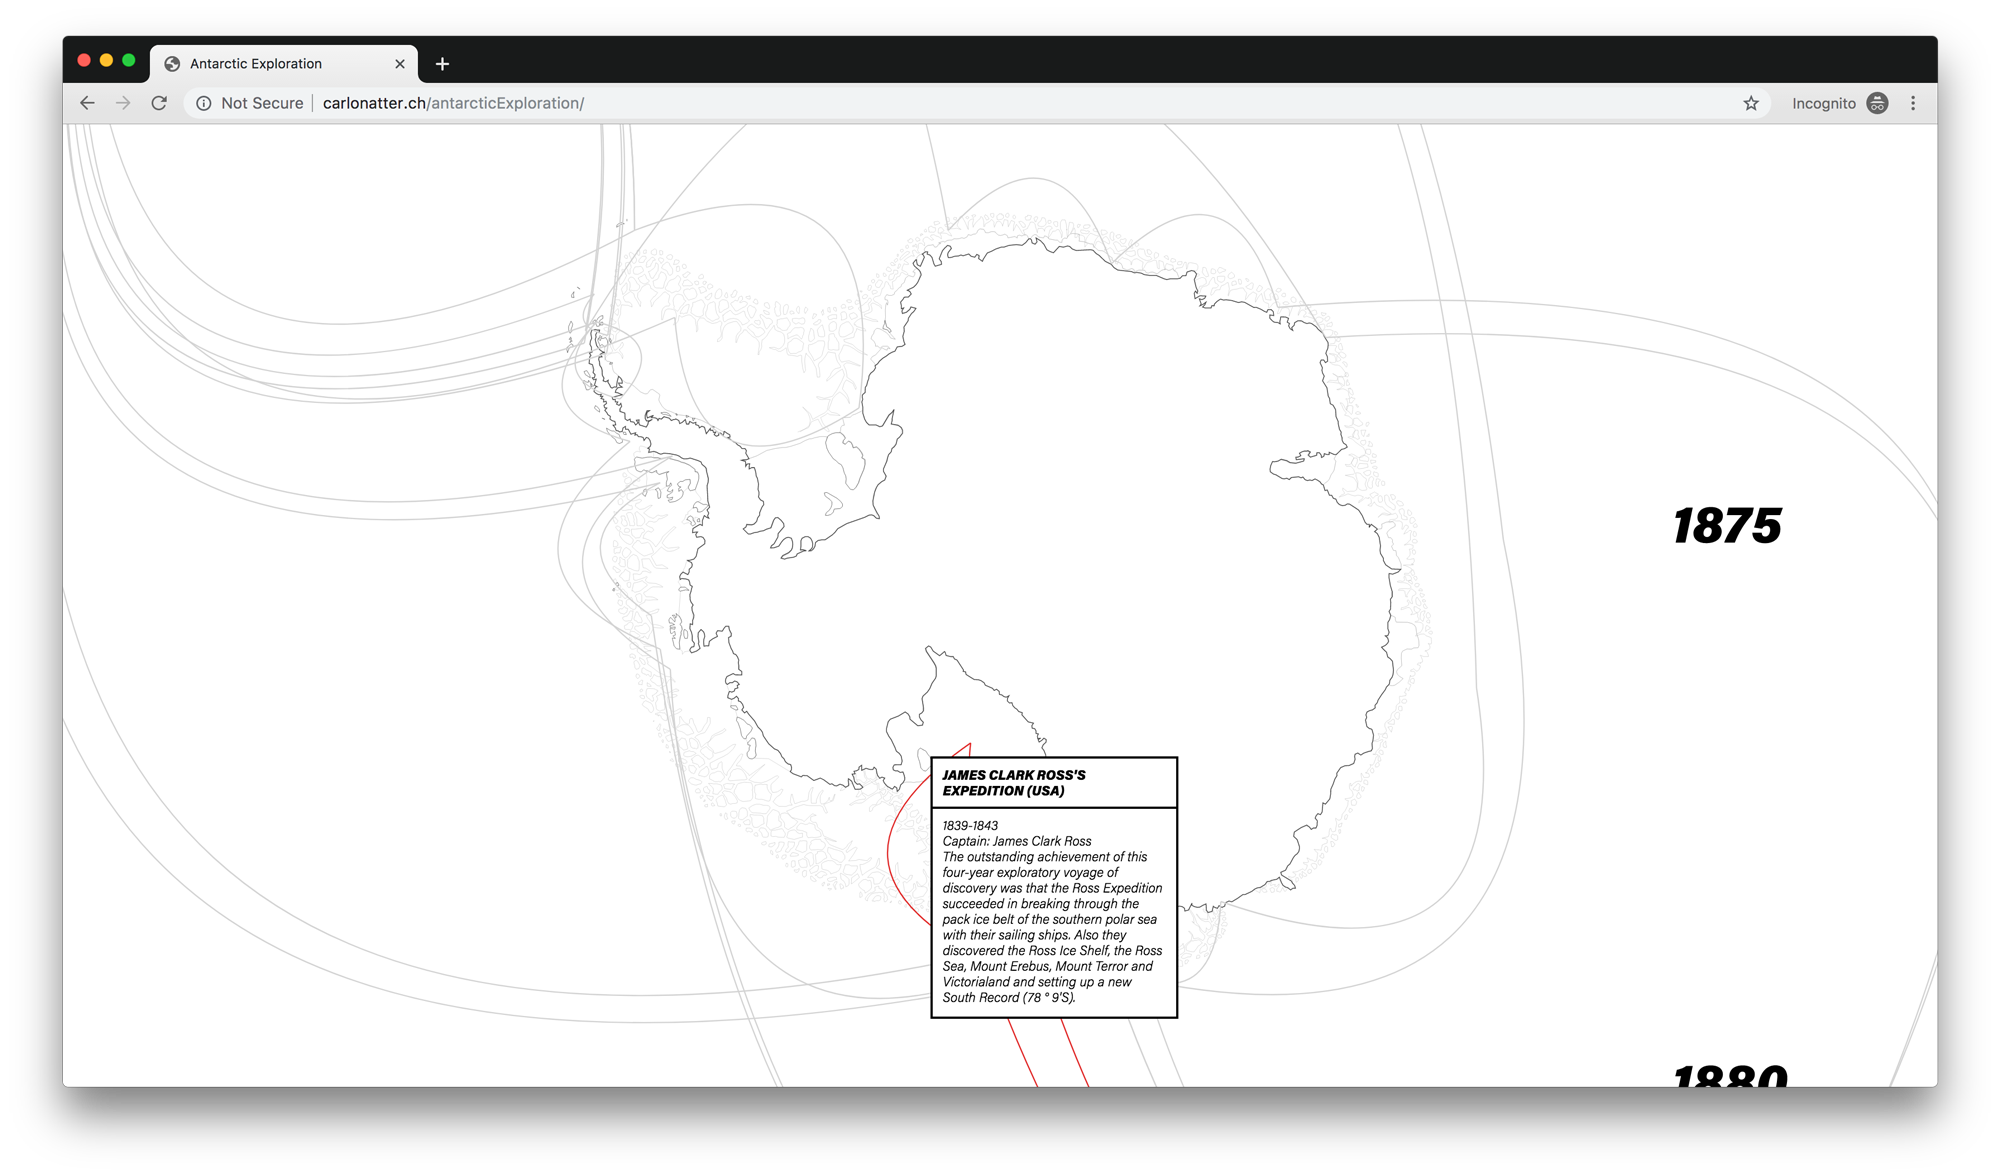 Display of individual paths taken on Antarctica